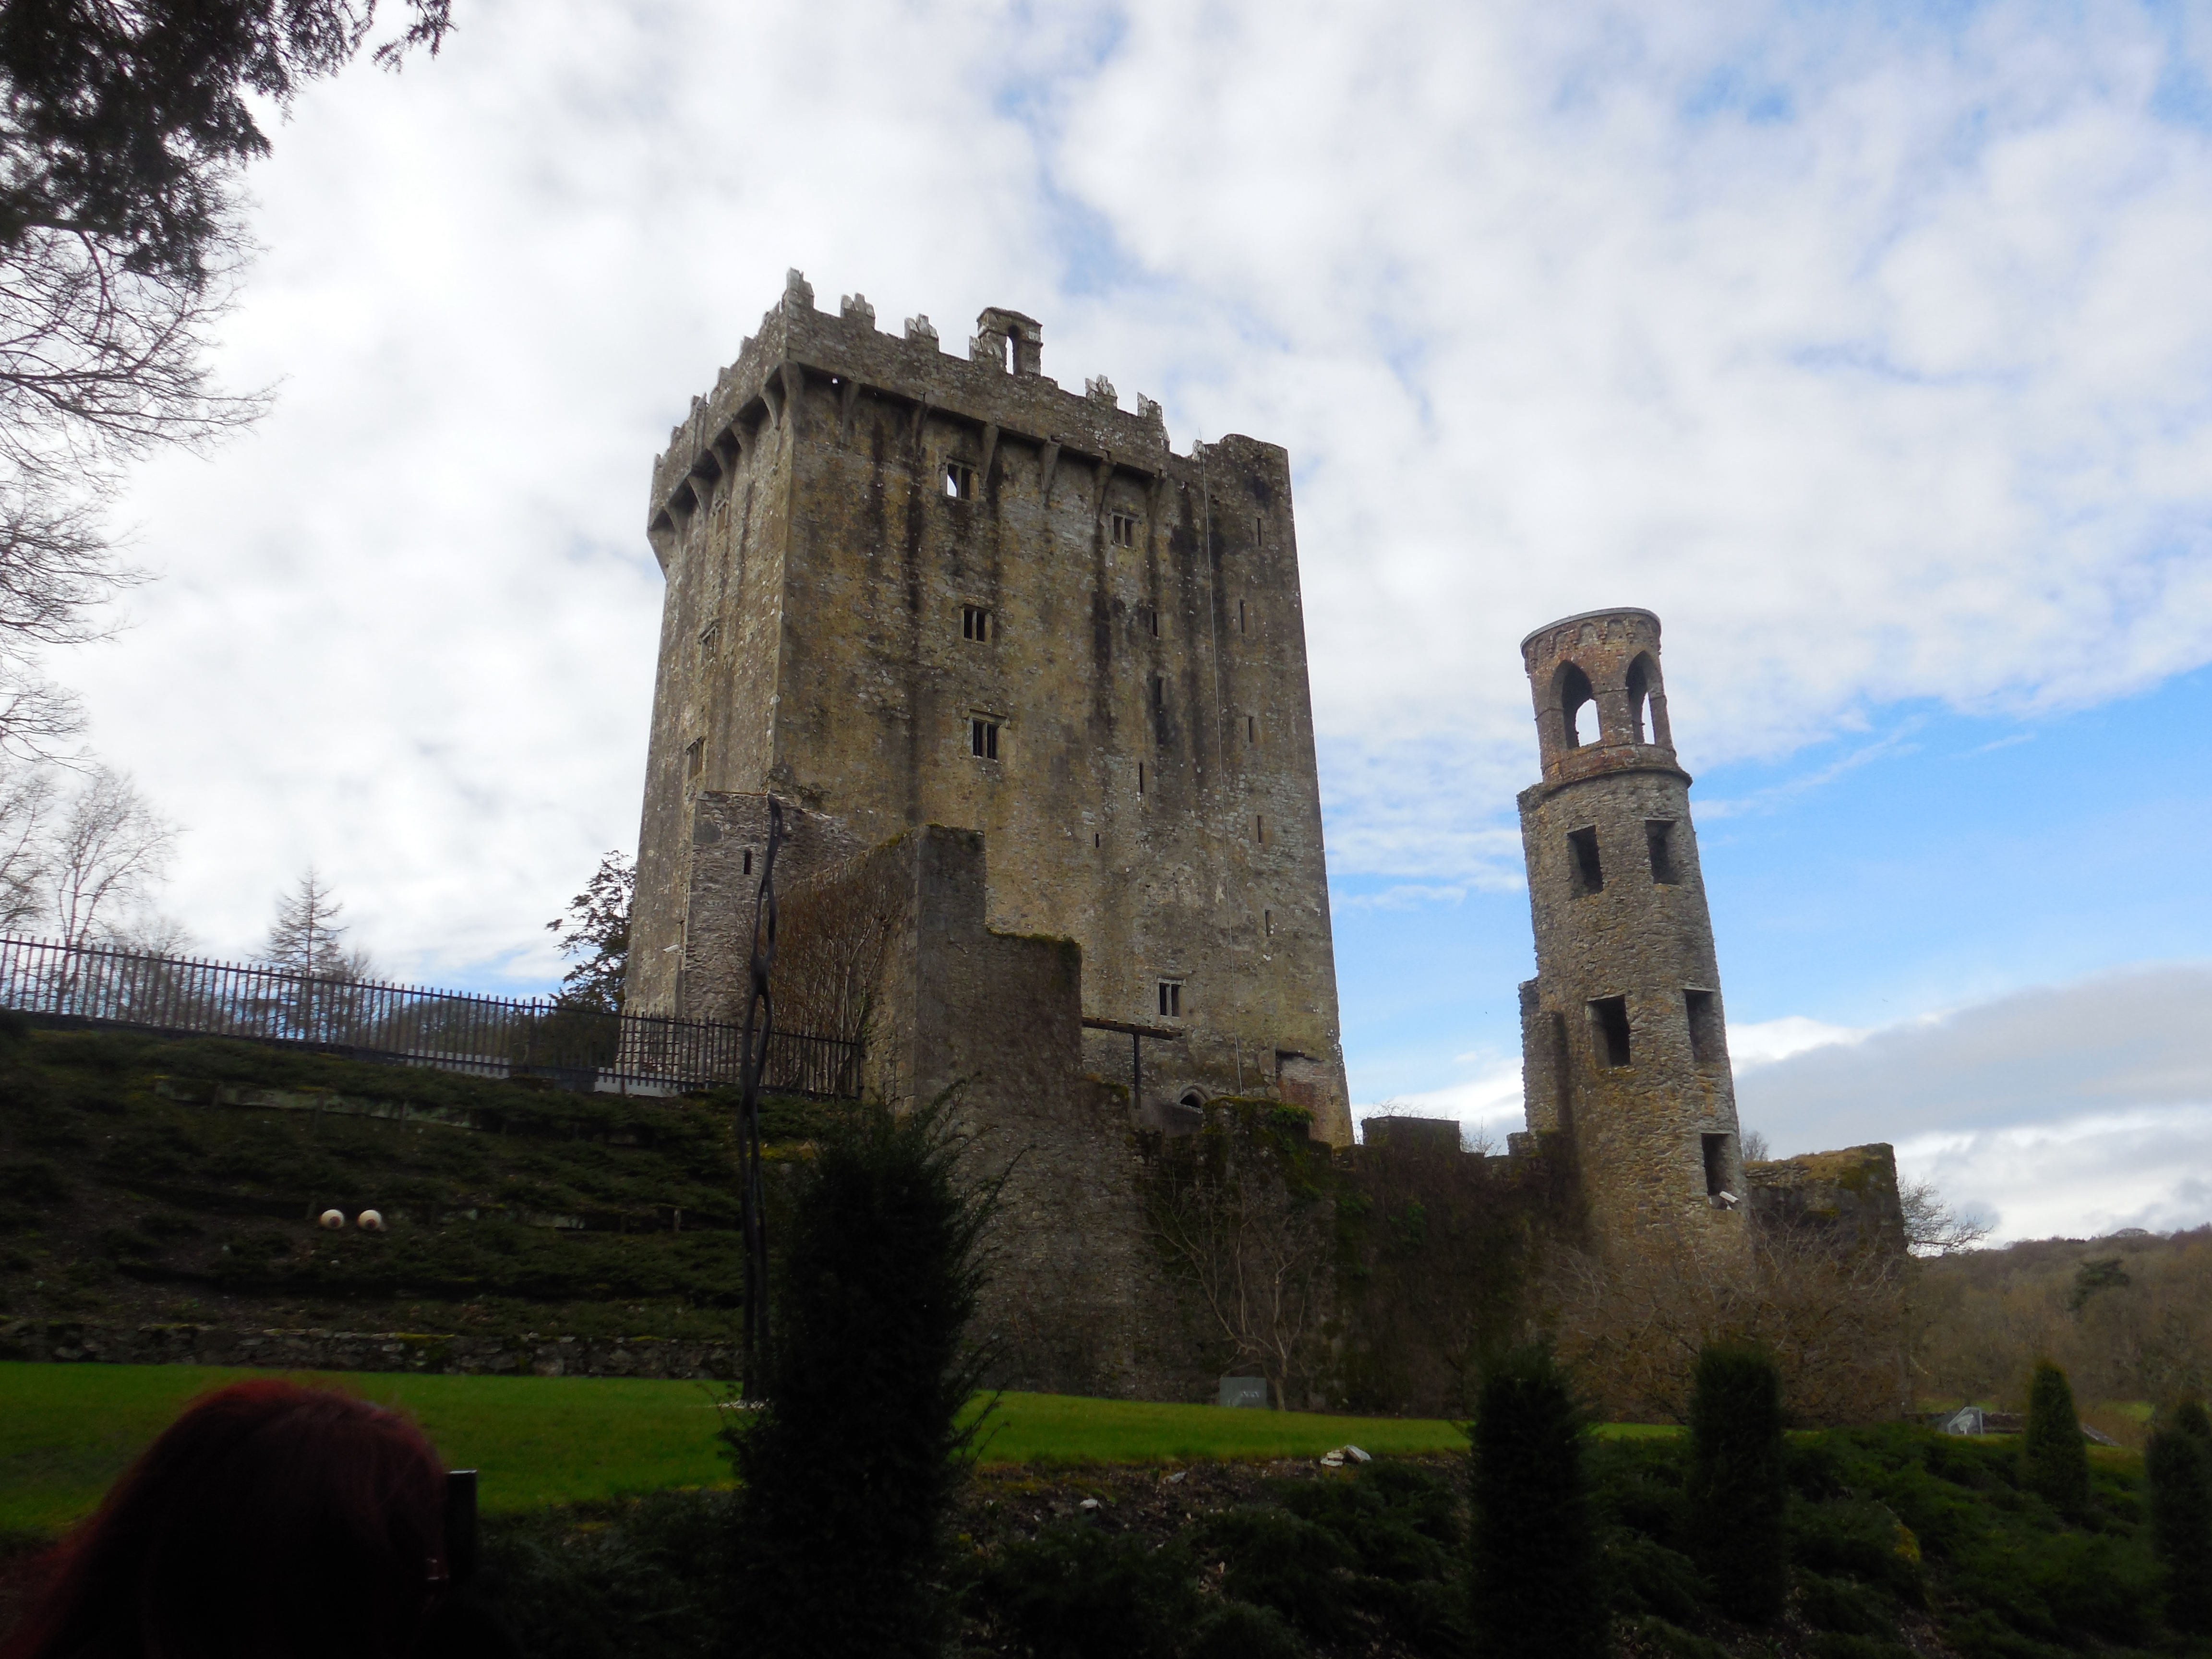 Blarney Castle in Co. Cork